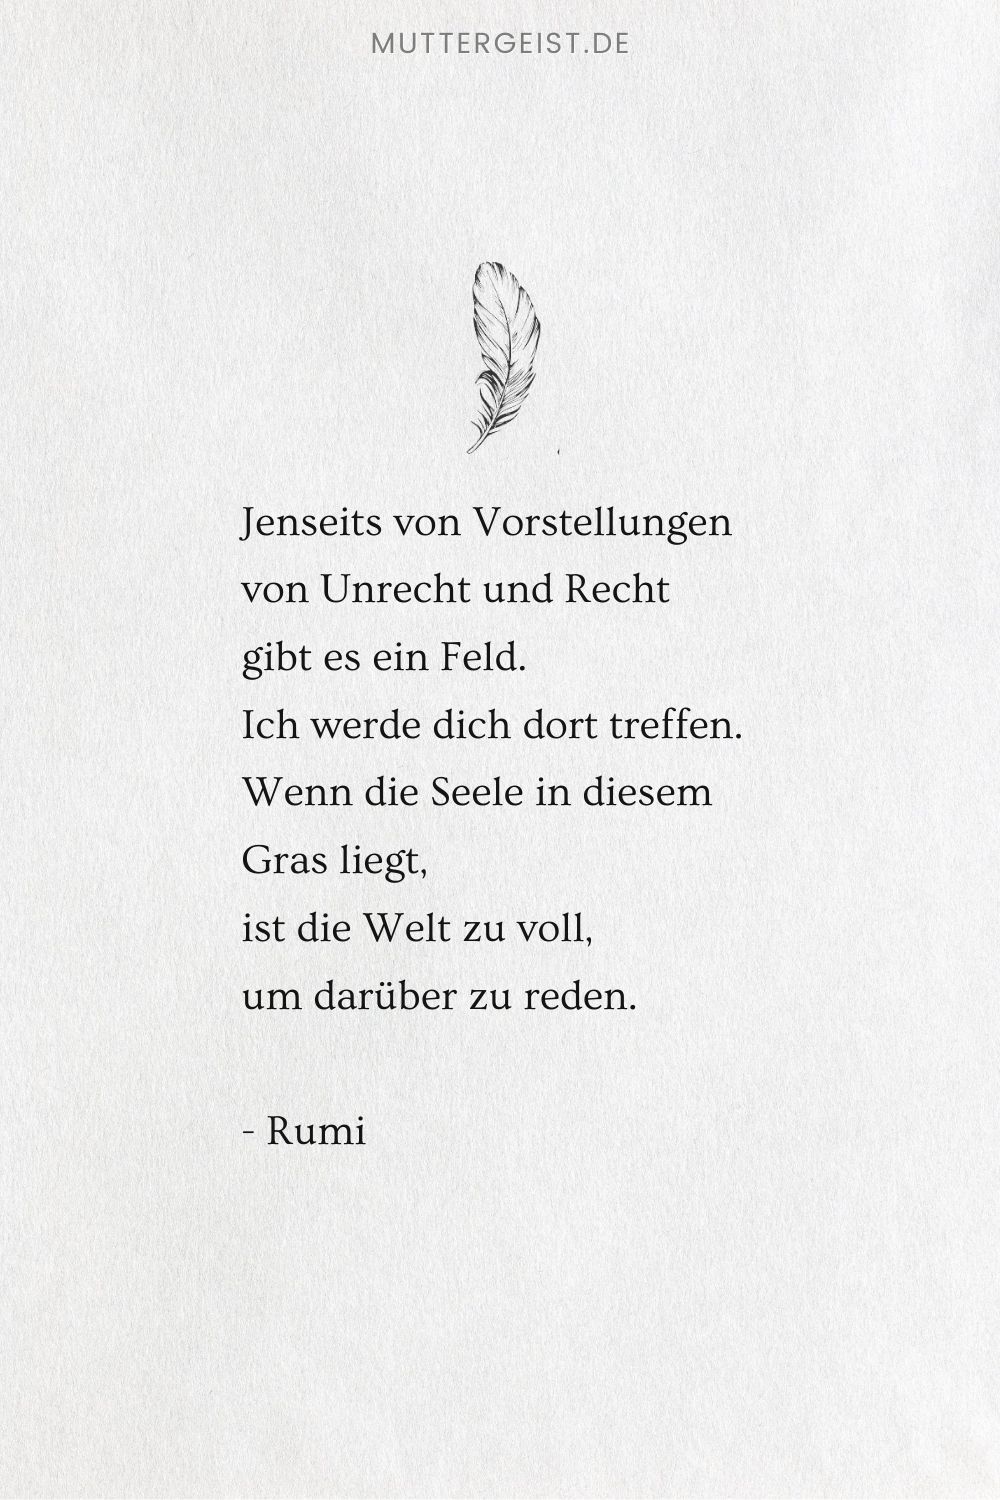 Das Gedicht von Rumi